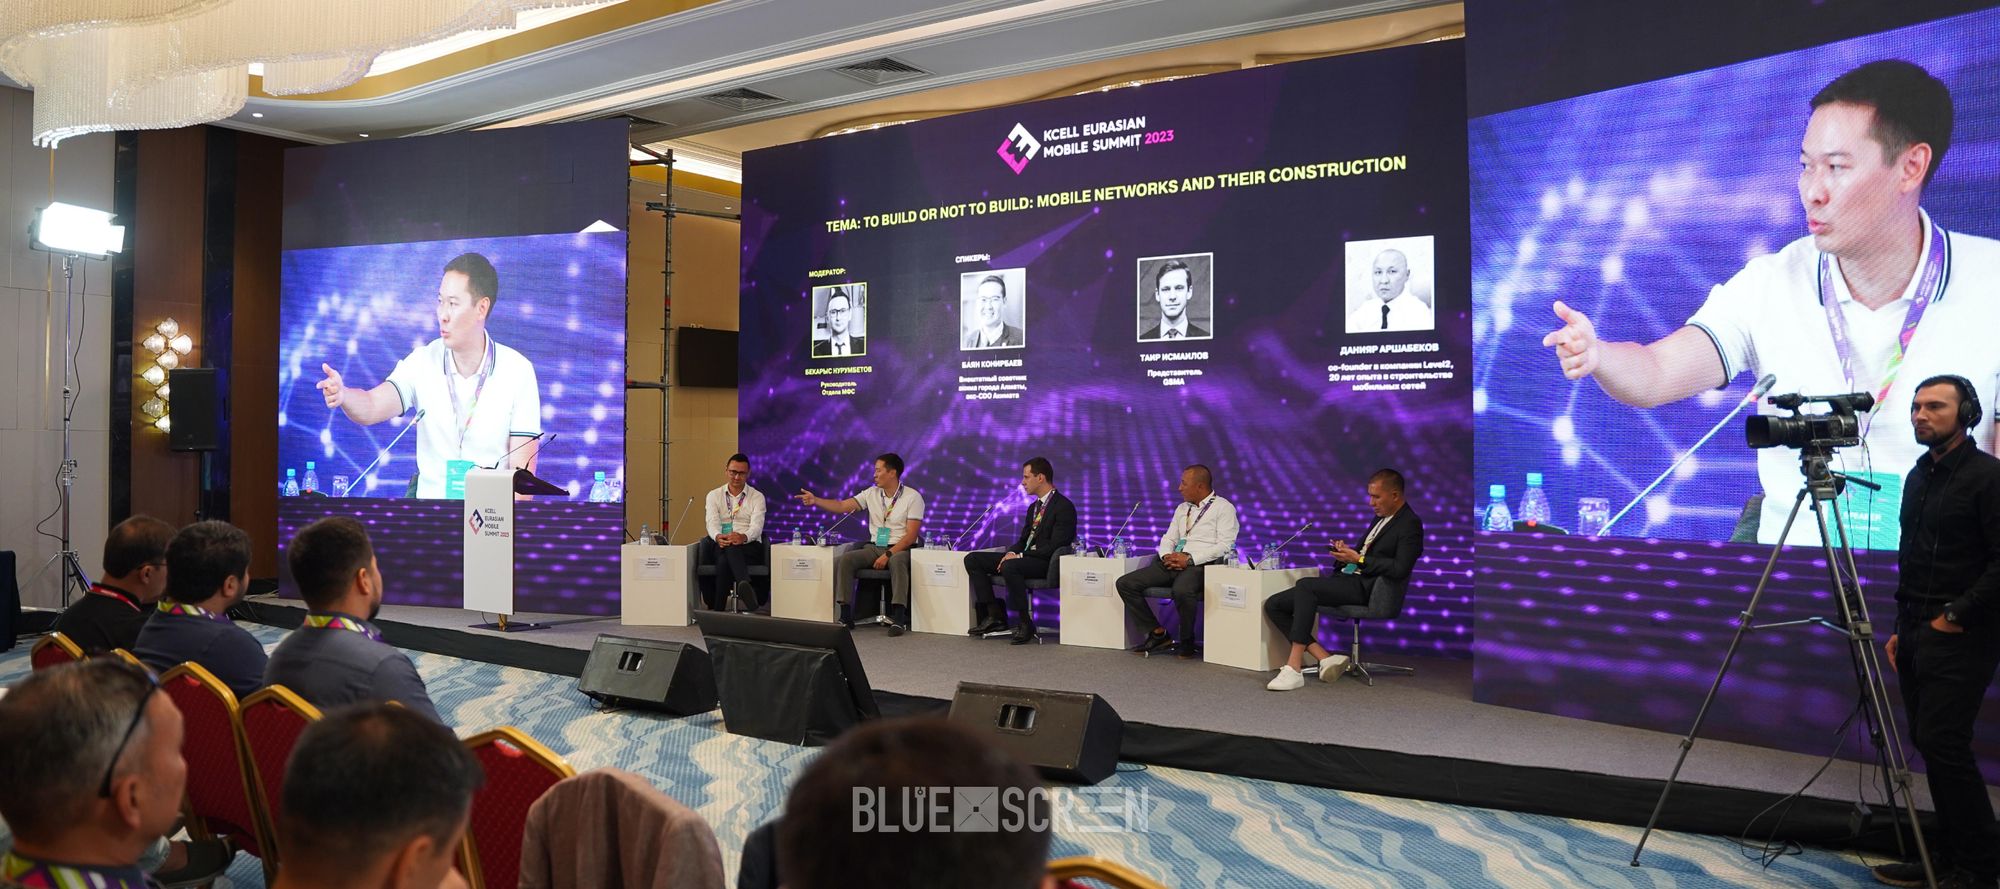 Kcell Eurasian Mobile Summit 2023: строить или не строить мобильные сети в РК?